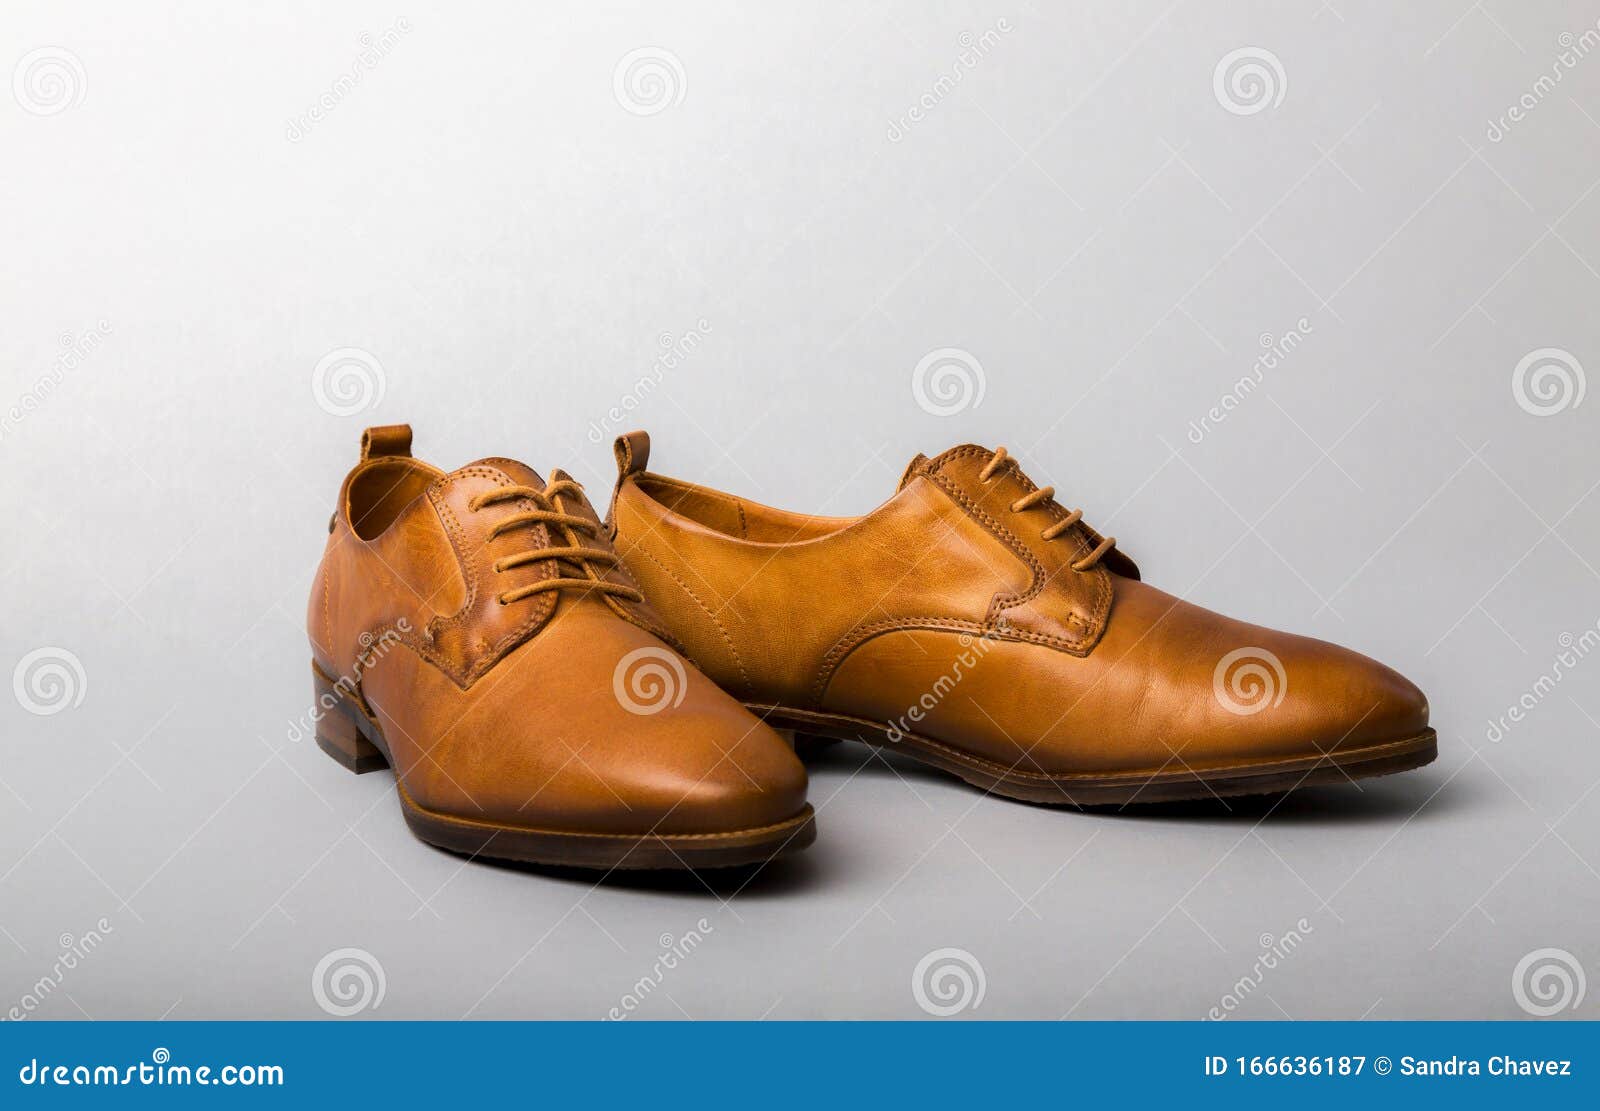 Vista Lateral De Zapatos Casuales Para Mujeres, Este Par De Zapatos Elegantes Es De Cowhide Y Su Color Marrón Imagen de archivo - Imagen de oficina, estilo: 166636187